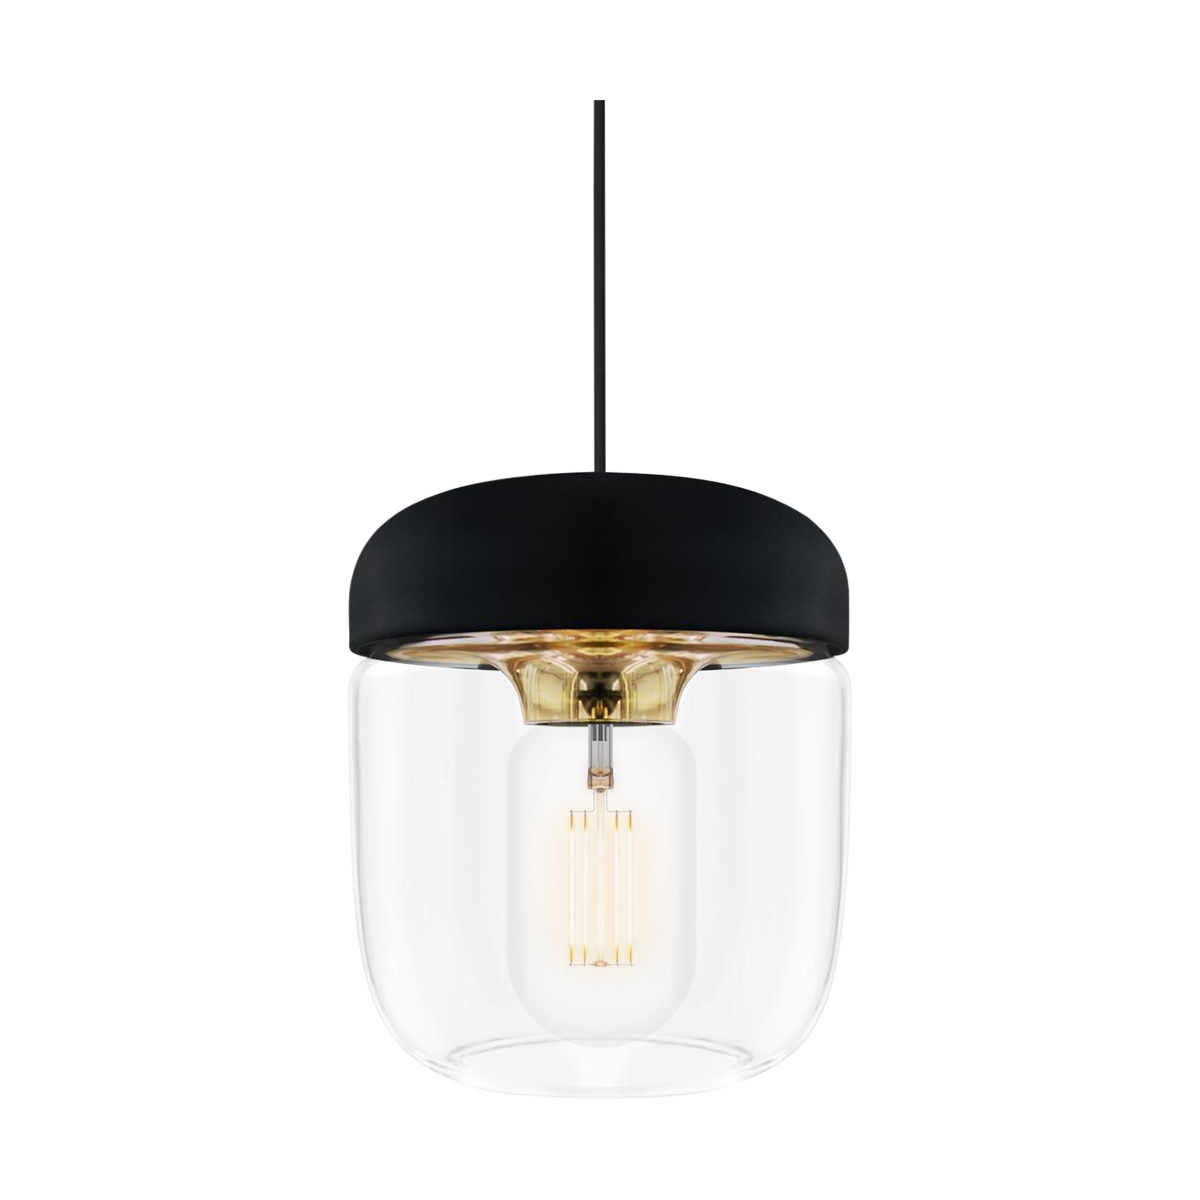 Acorn hanglamp zwart met brass - met koordset zwart - Ø 14 cm